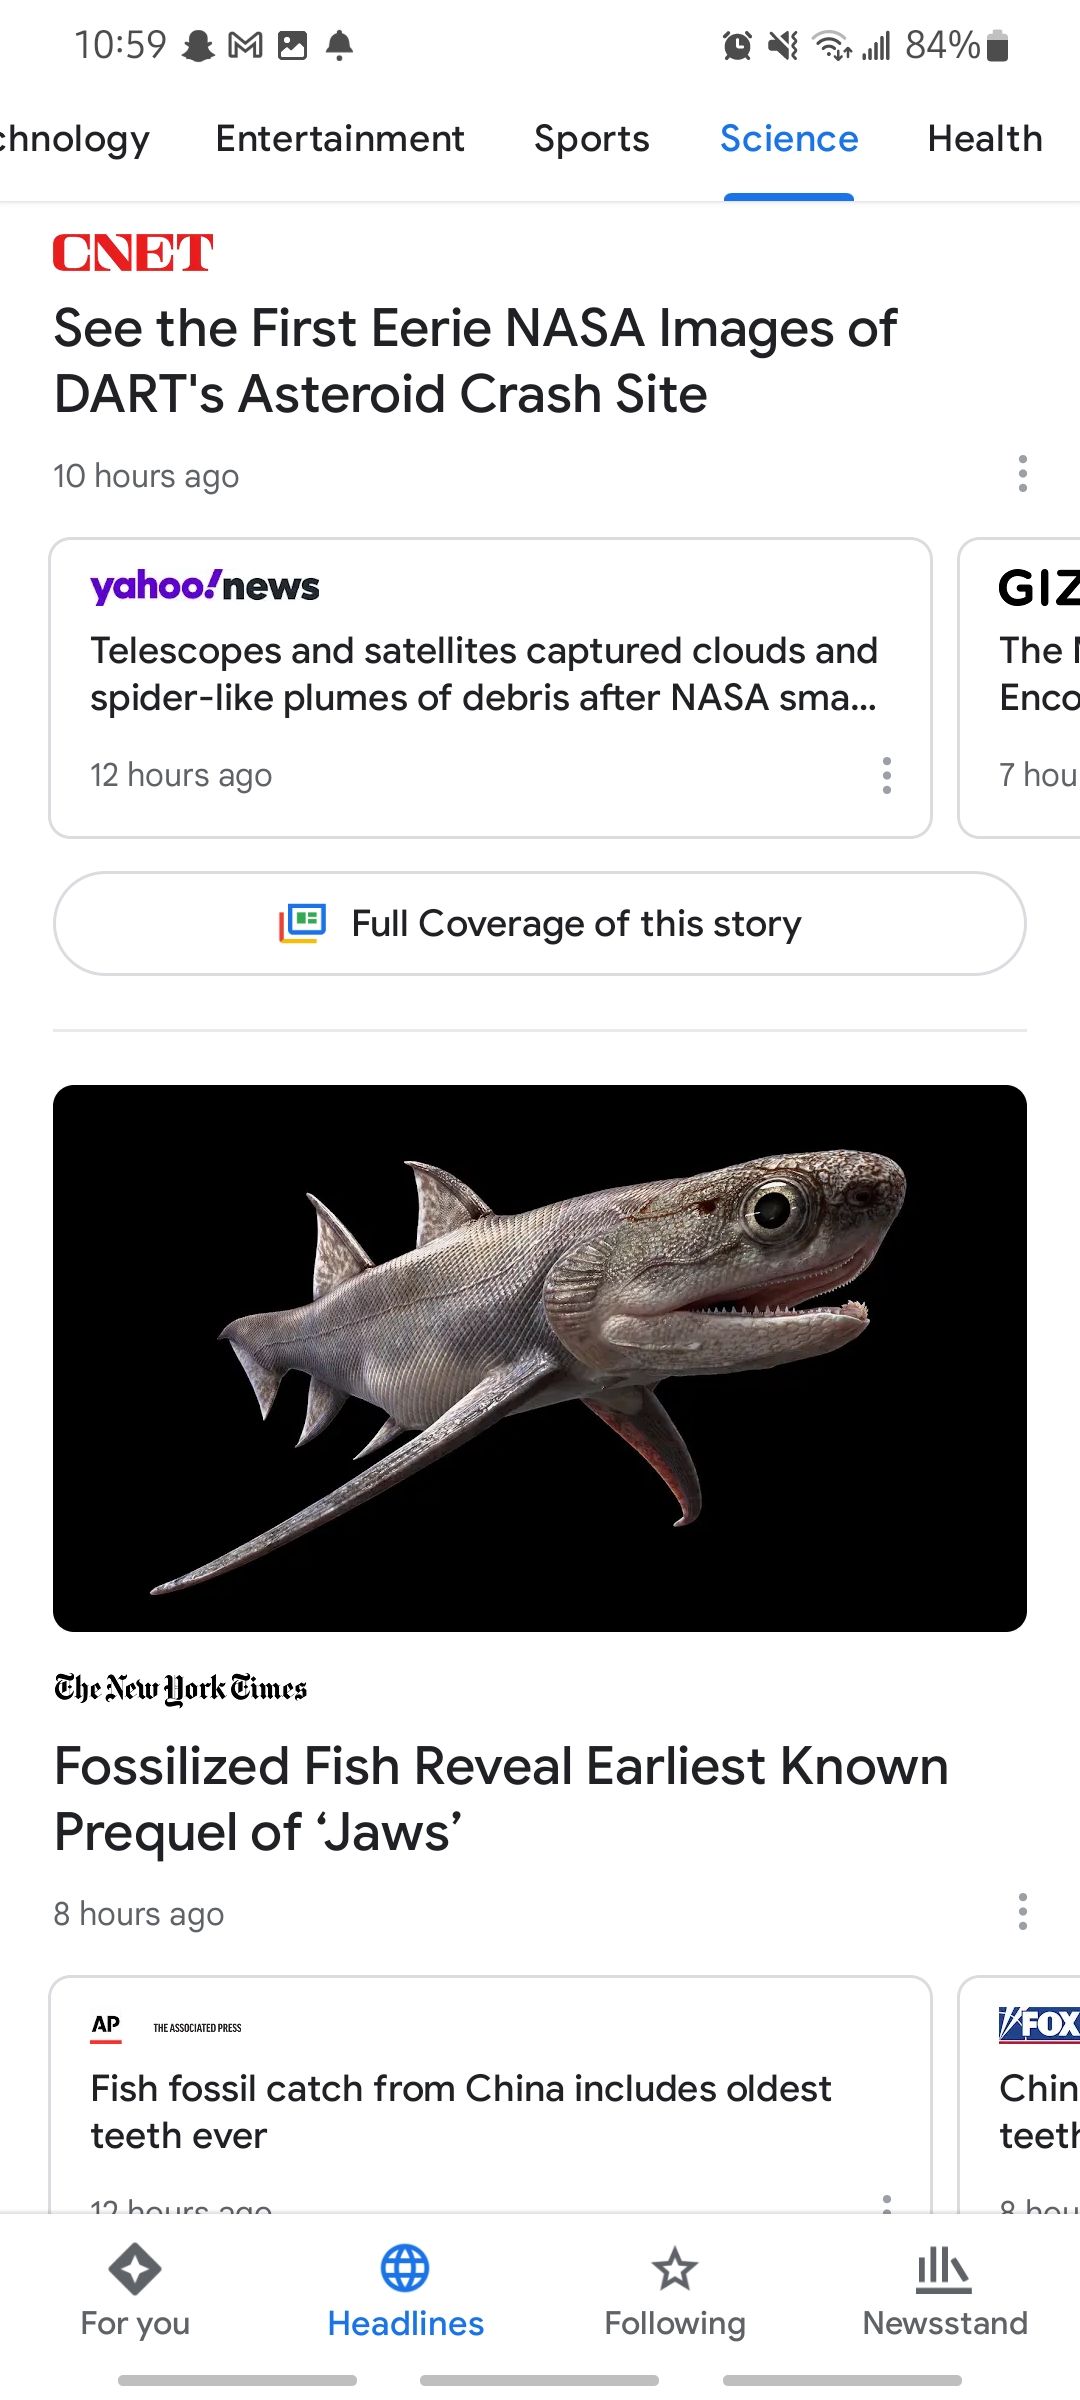 science headlines in google news app